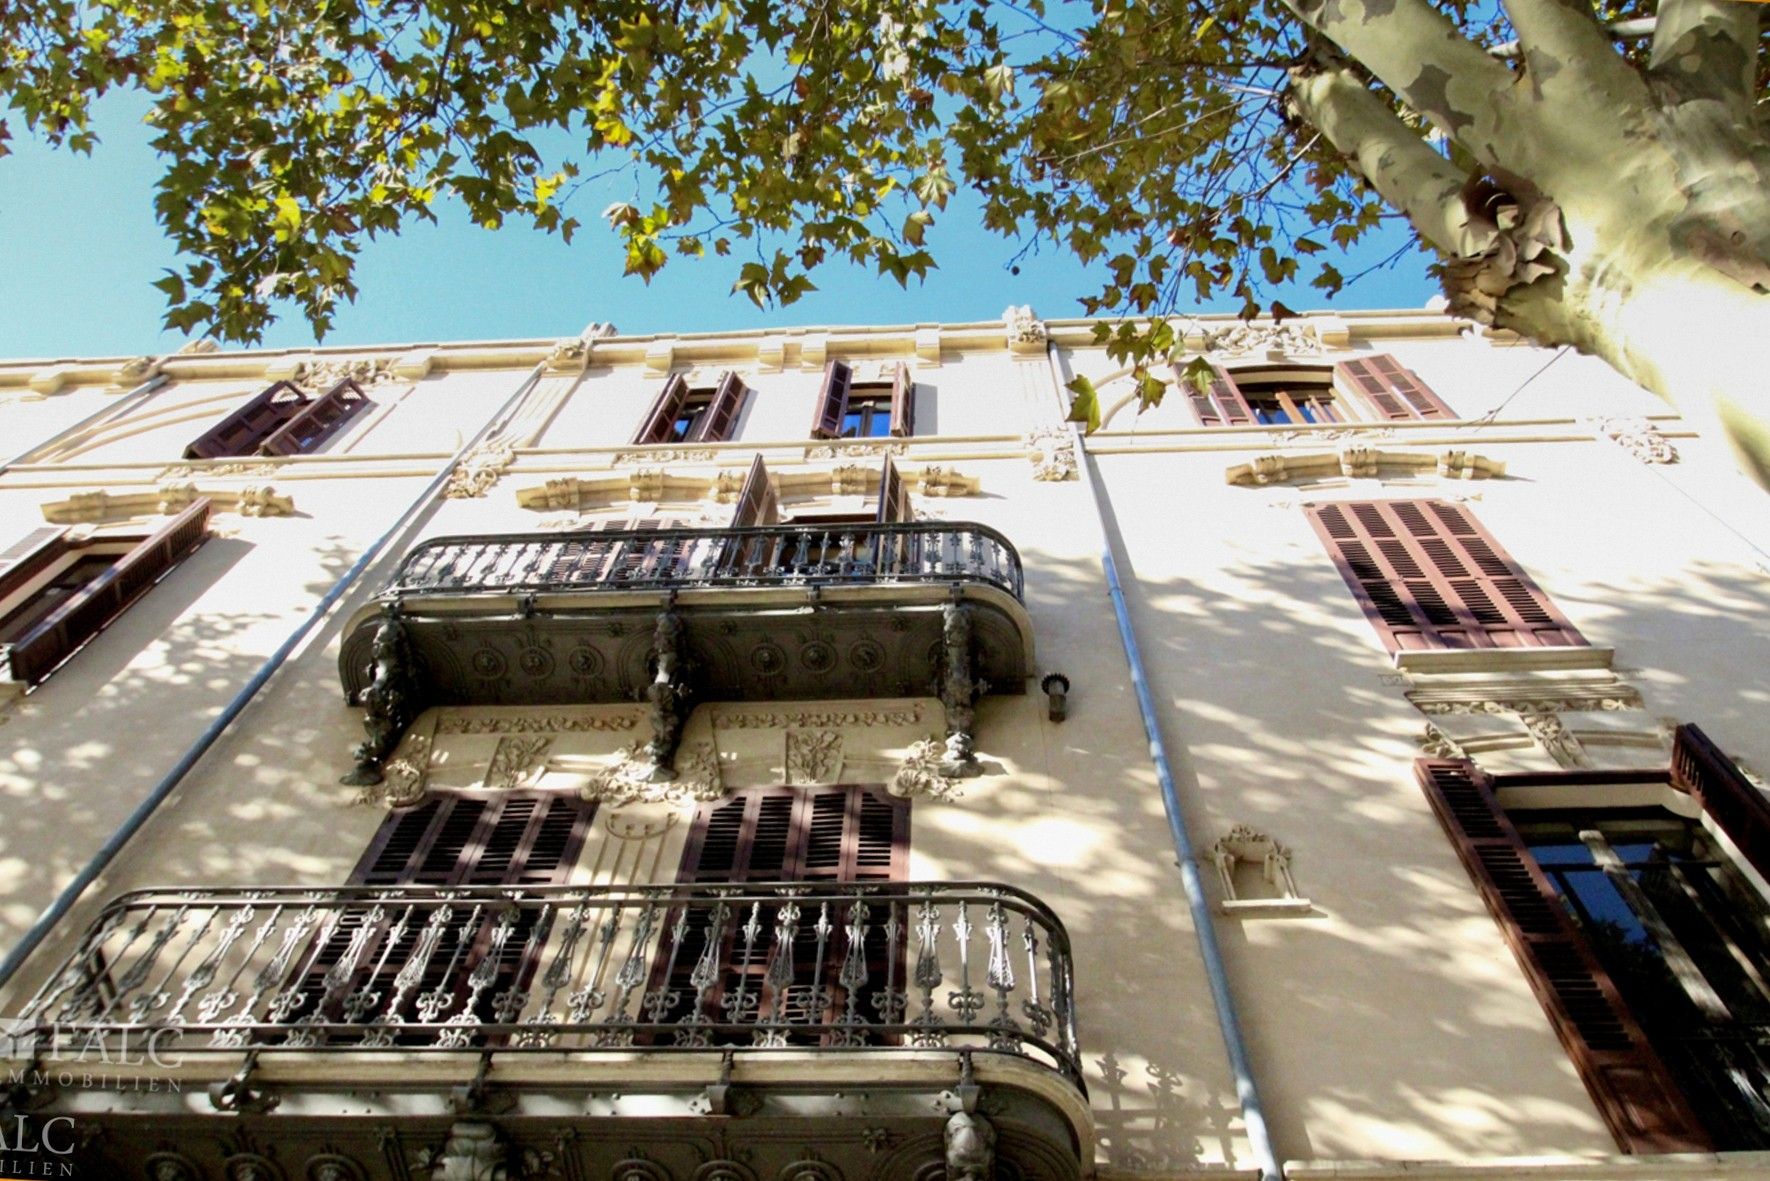 Fotos Palma: Zentral und herrschaftlich wohnen in Stadtpalast